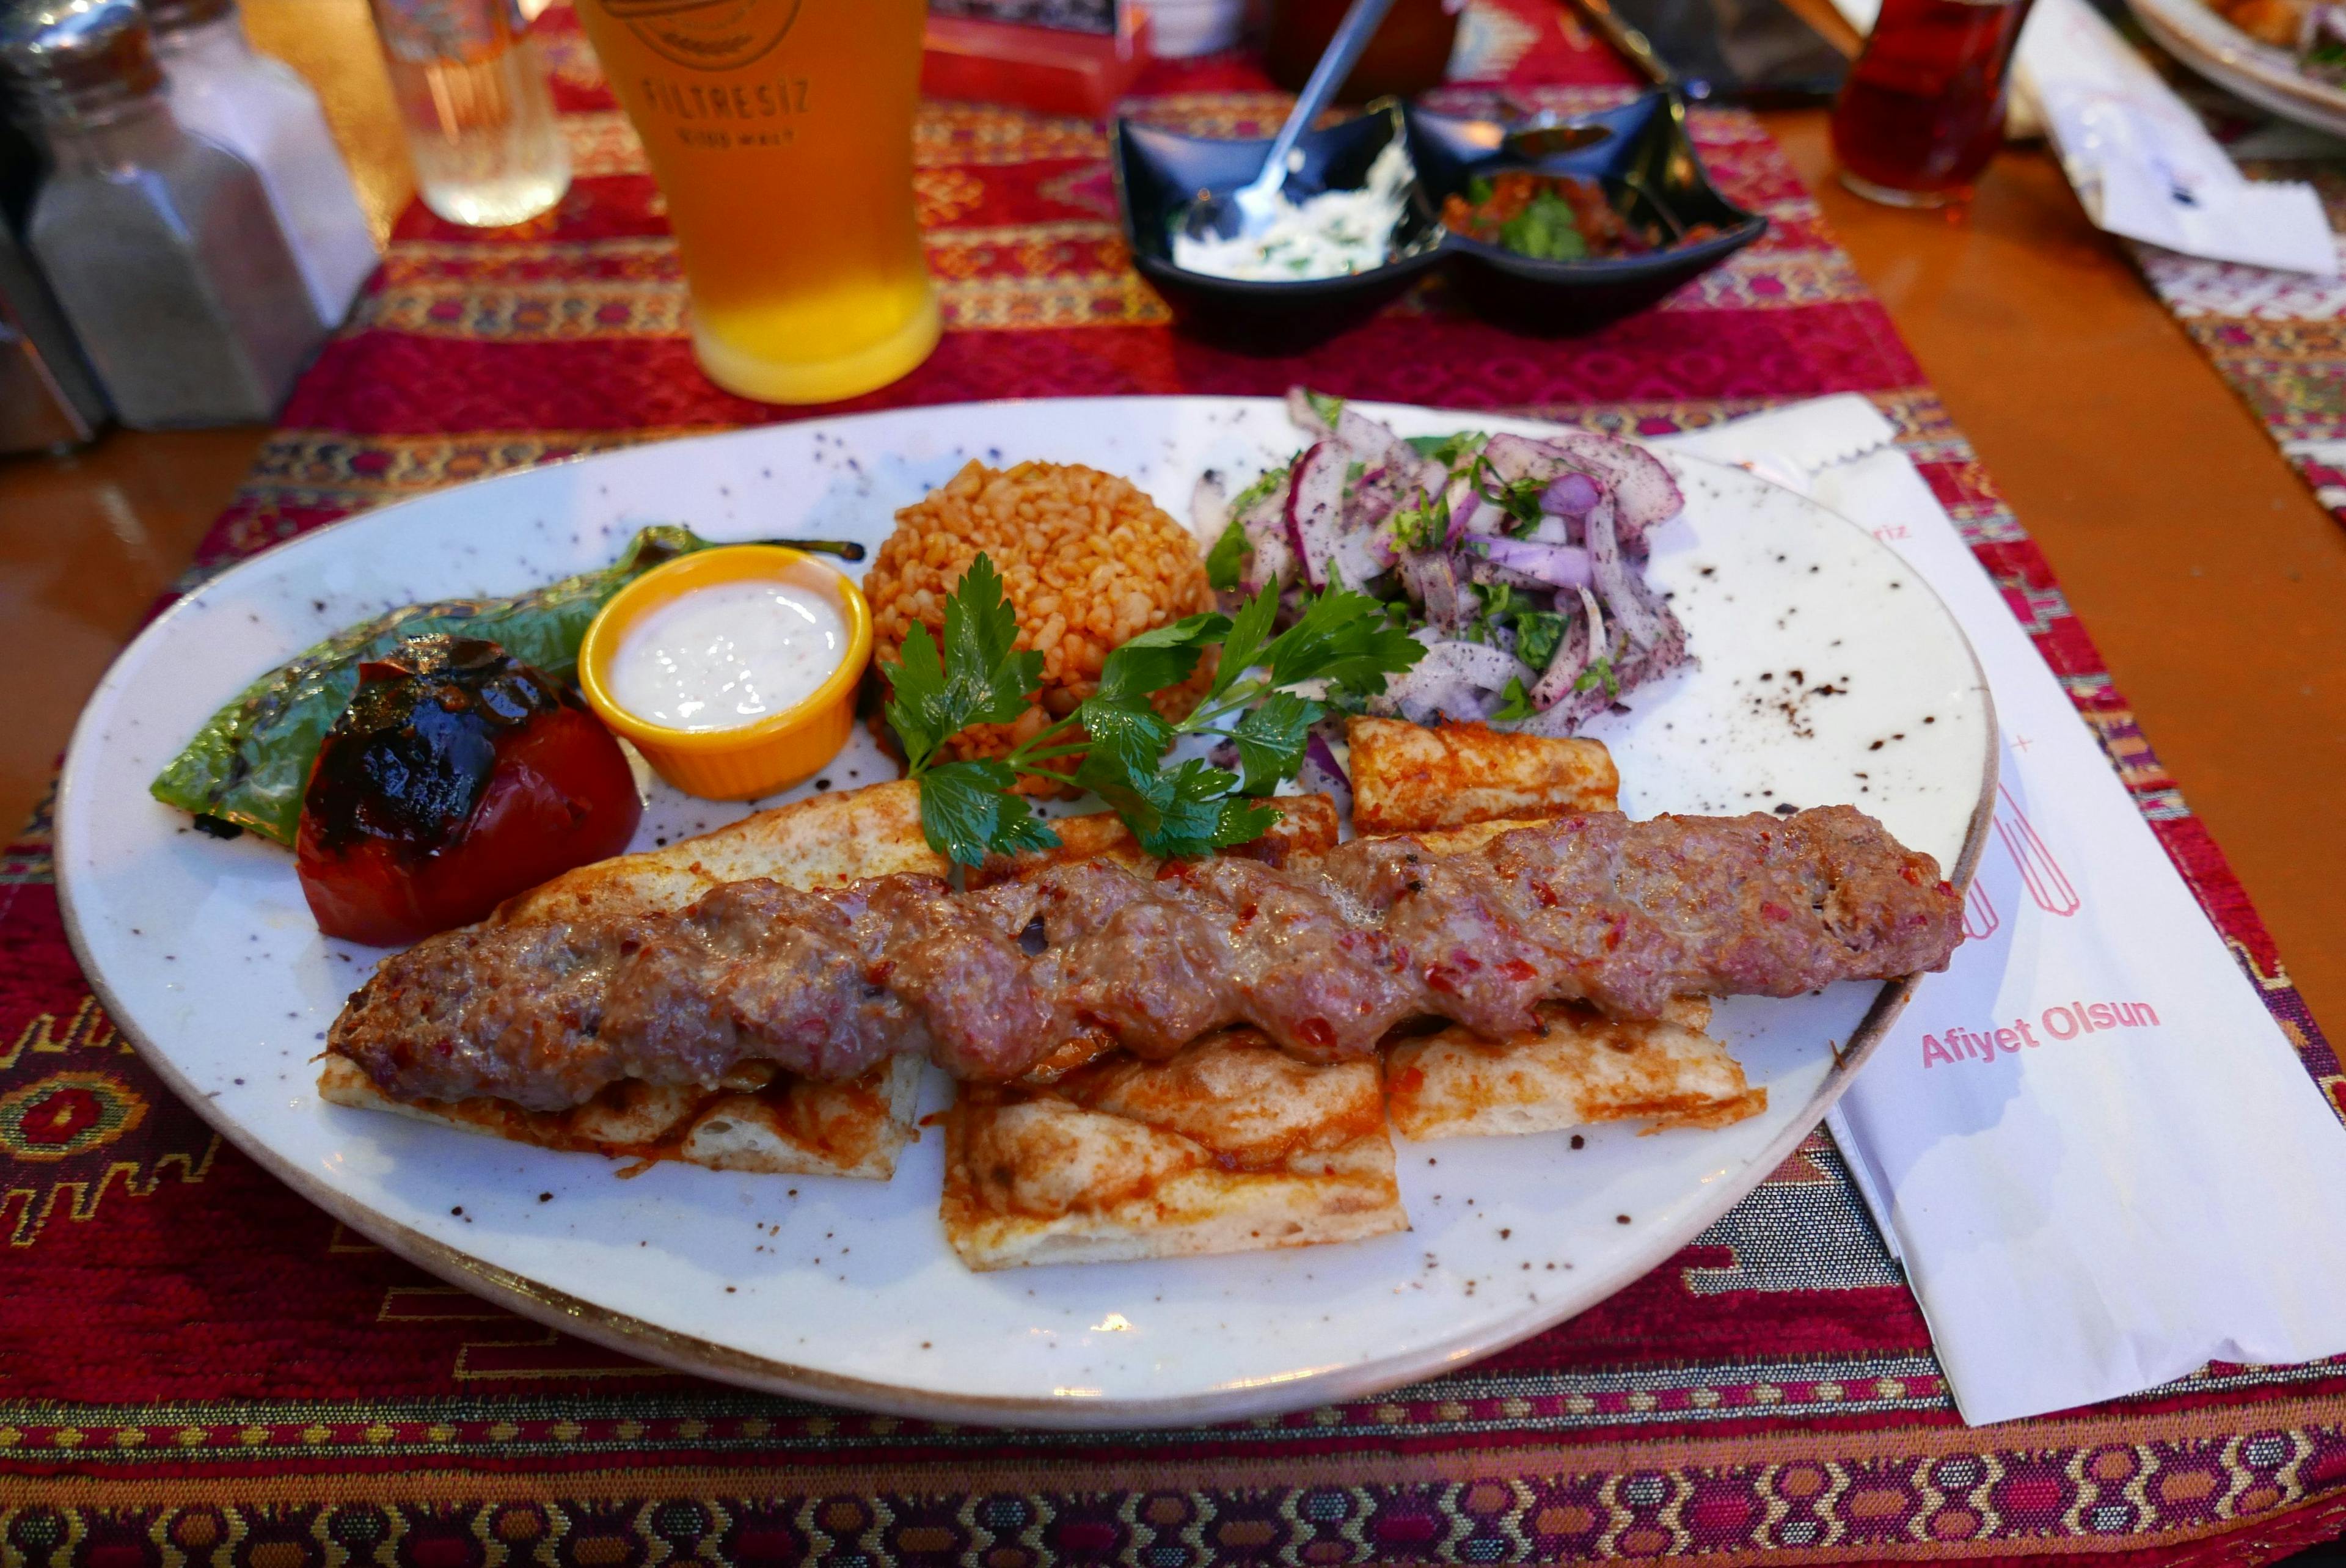 Turkish kebab on a plate in restaurant in Turkey.